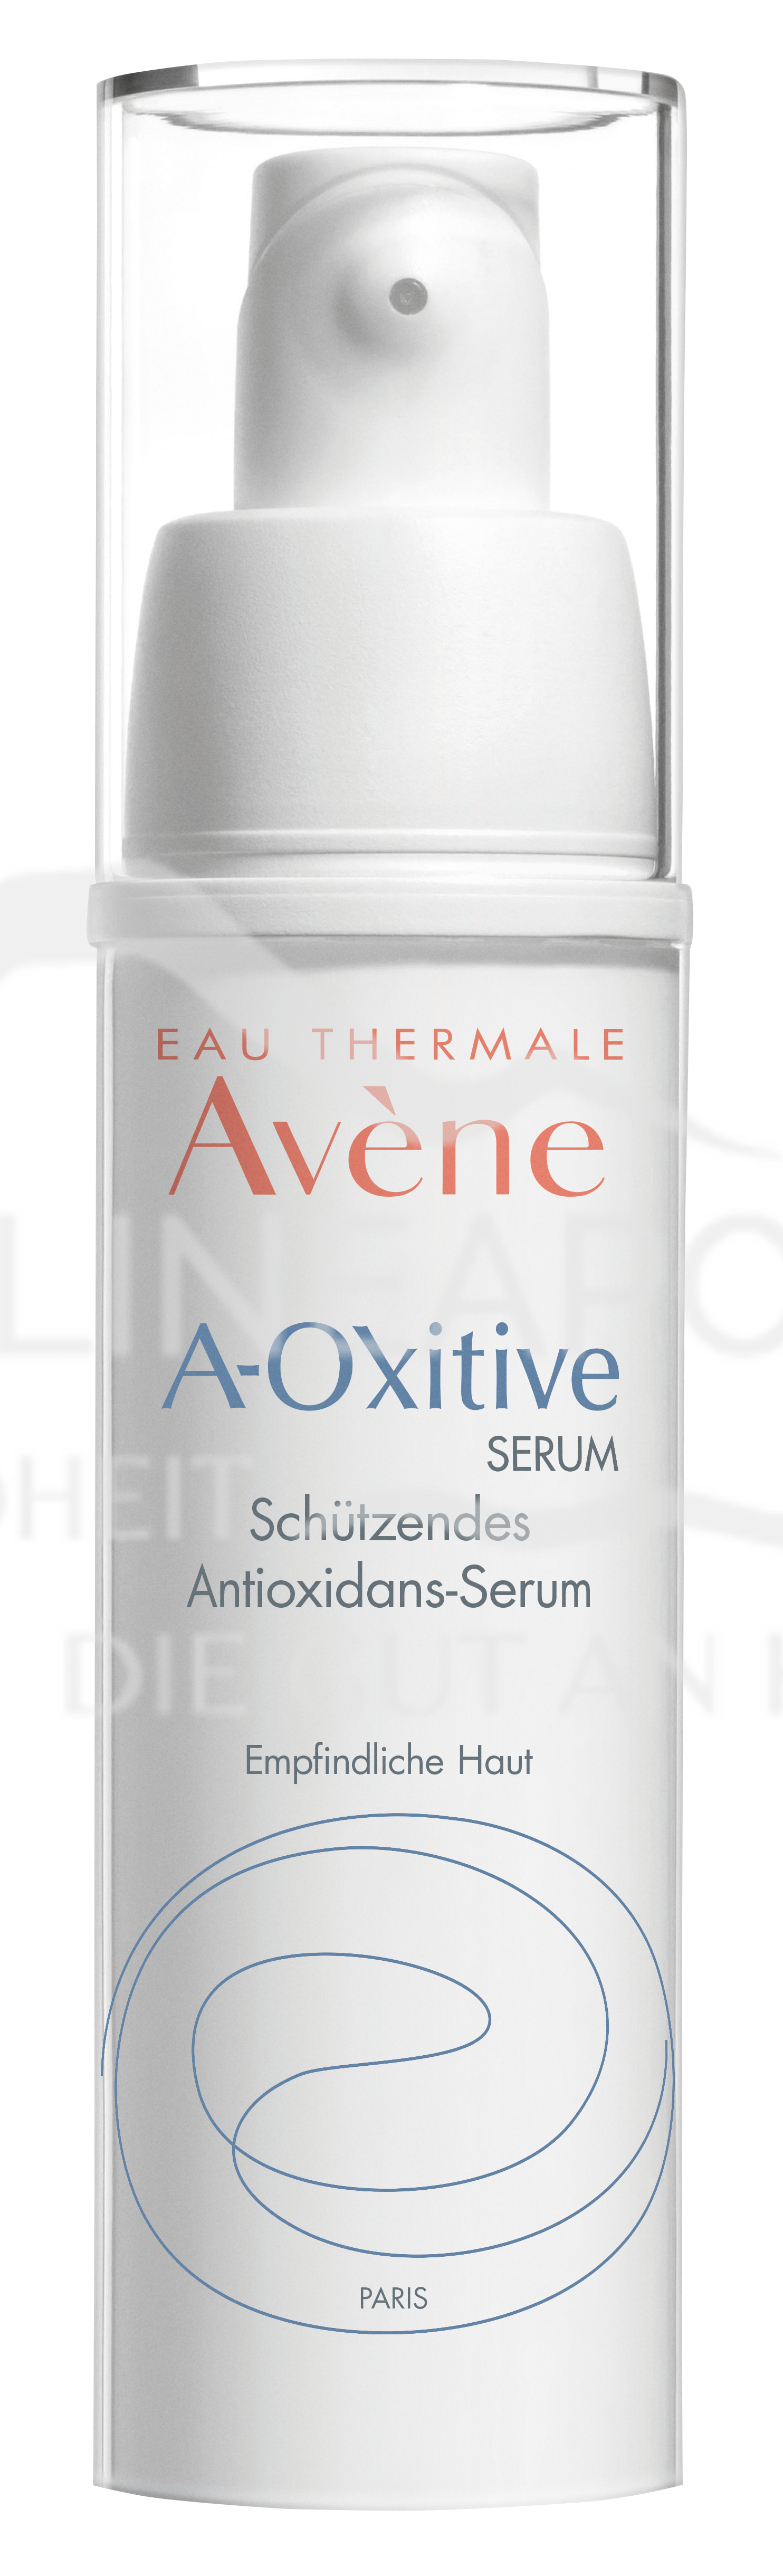 Avène A-Oxitive Serum Schützendes Antioxidans-Serum